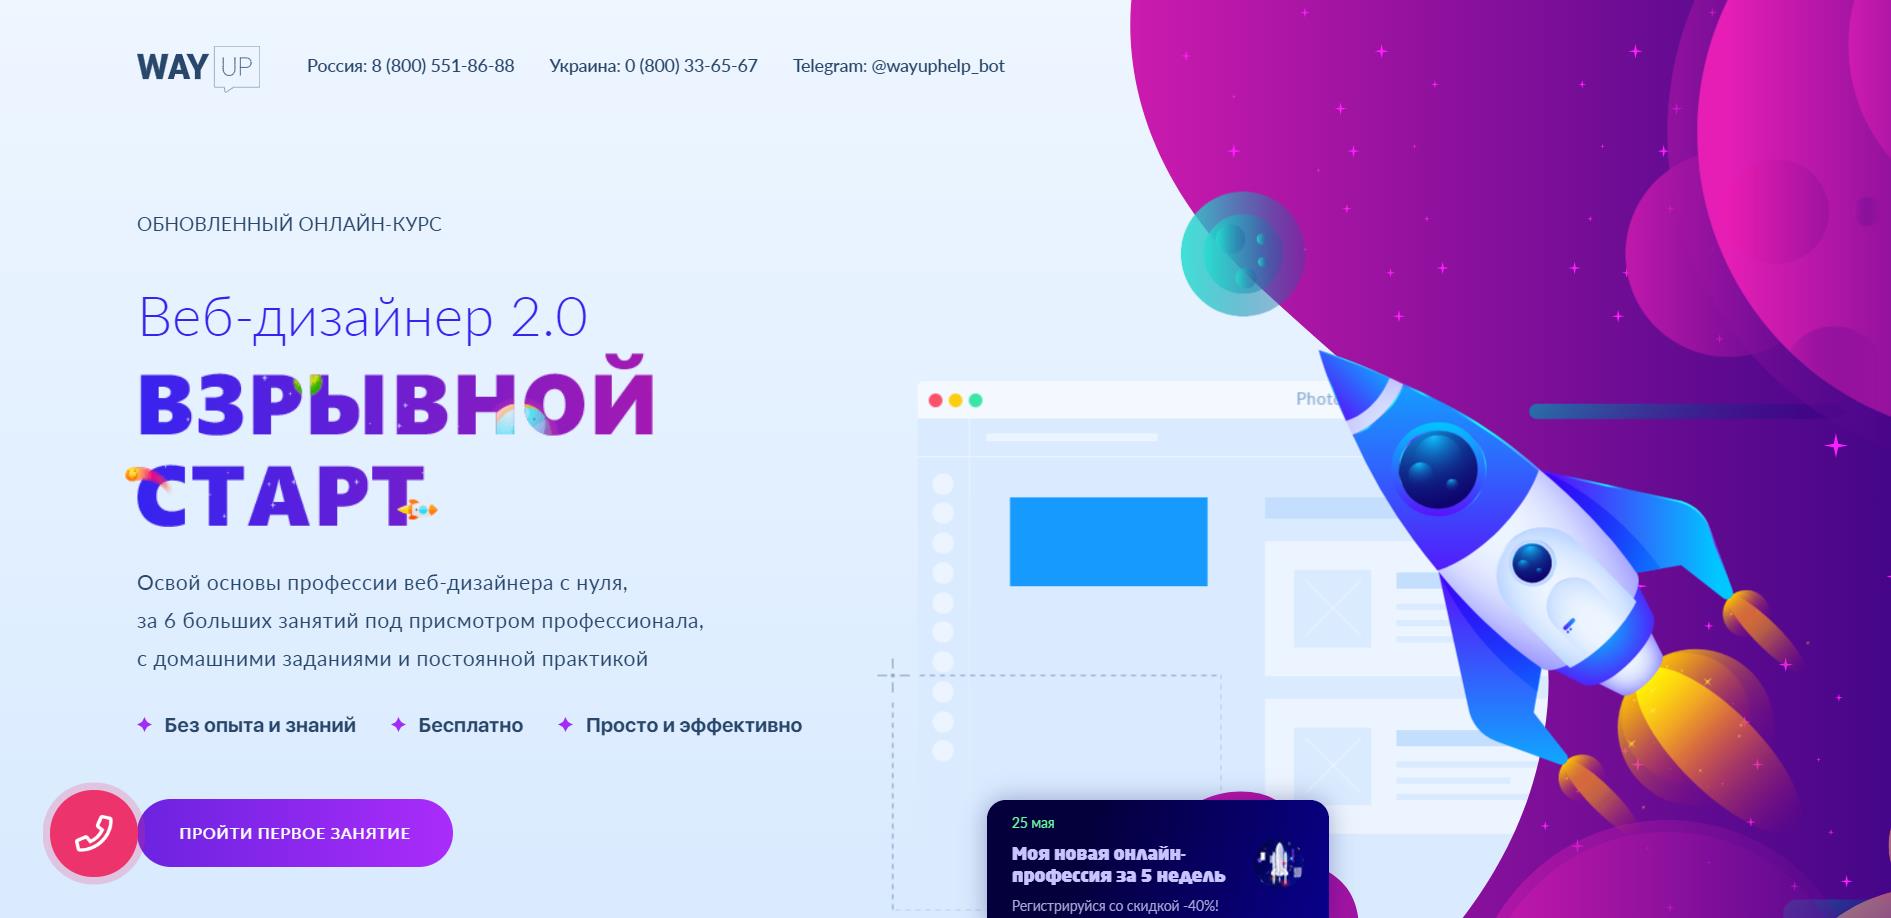 Курсы веб дизайна в Перми: р обучение UX/UI дизайнеров - WEB в школе МШП (СПБШТ)